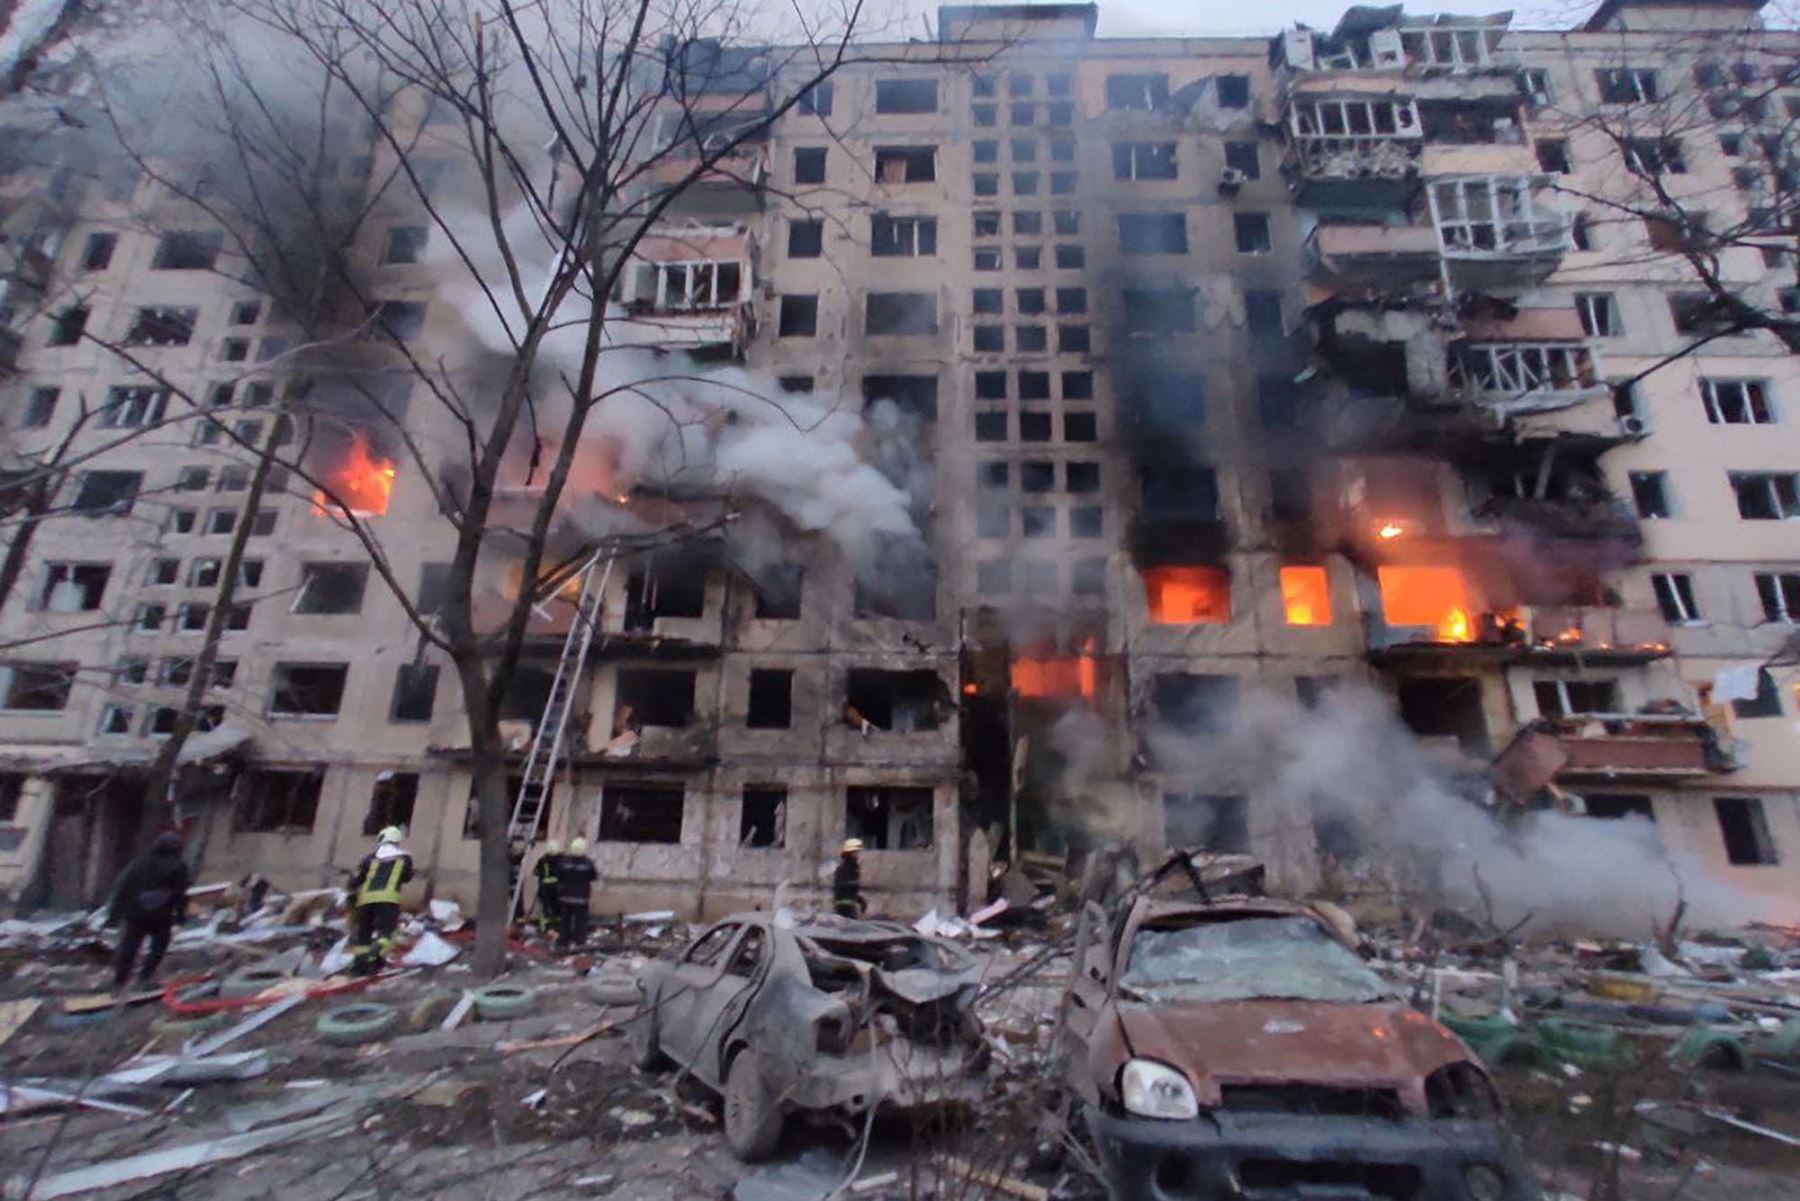 Los bomberos trabajan para extinguir un incendio en un edificio de apartamentos afectado por bombardeos en el distrito de Obolon en Kiev.
Foto: AFP